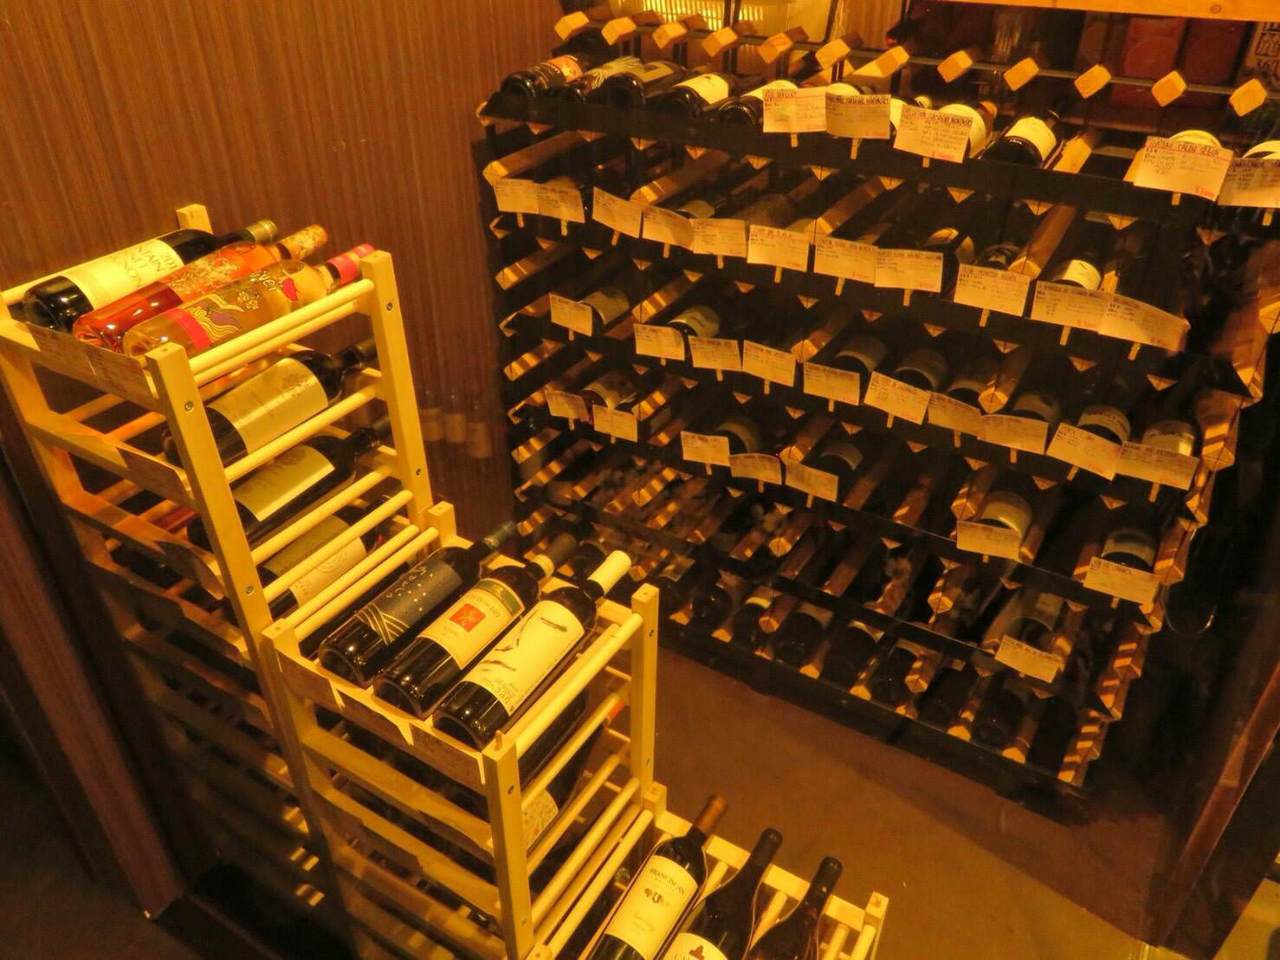 大型のワインセラーは常時約200本